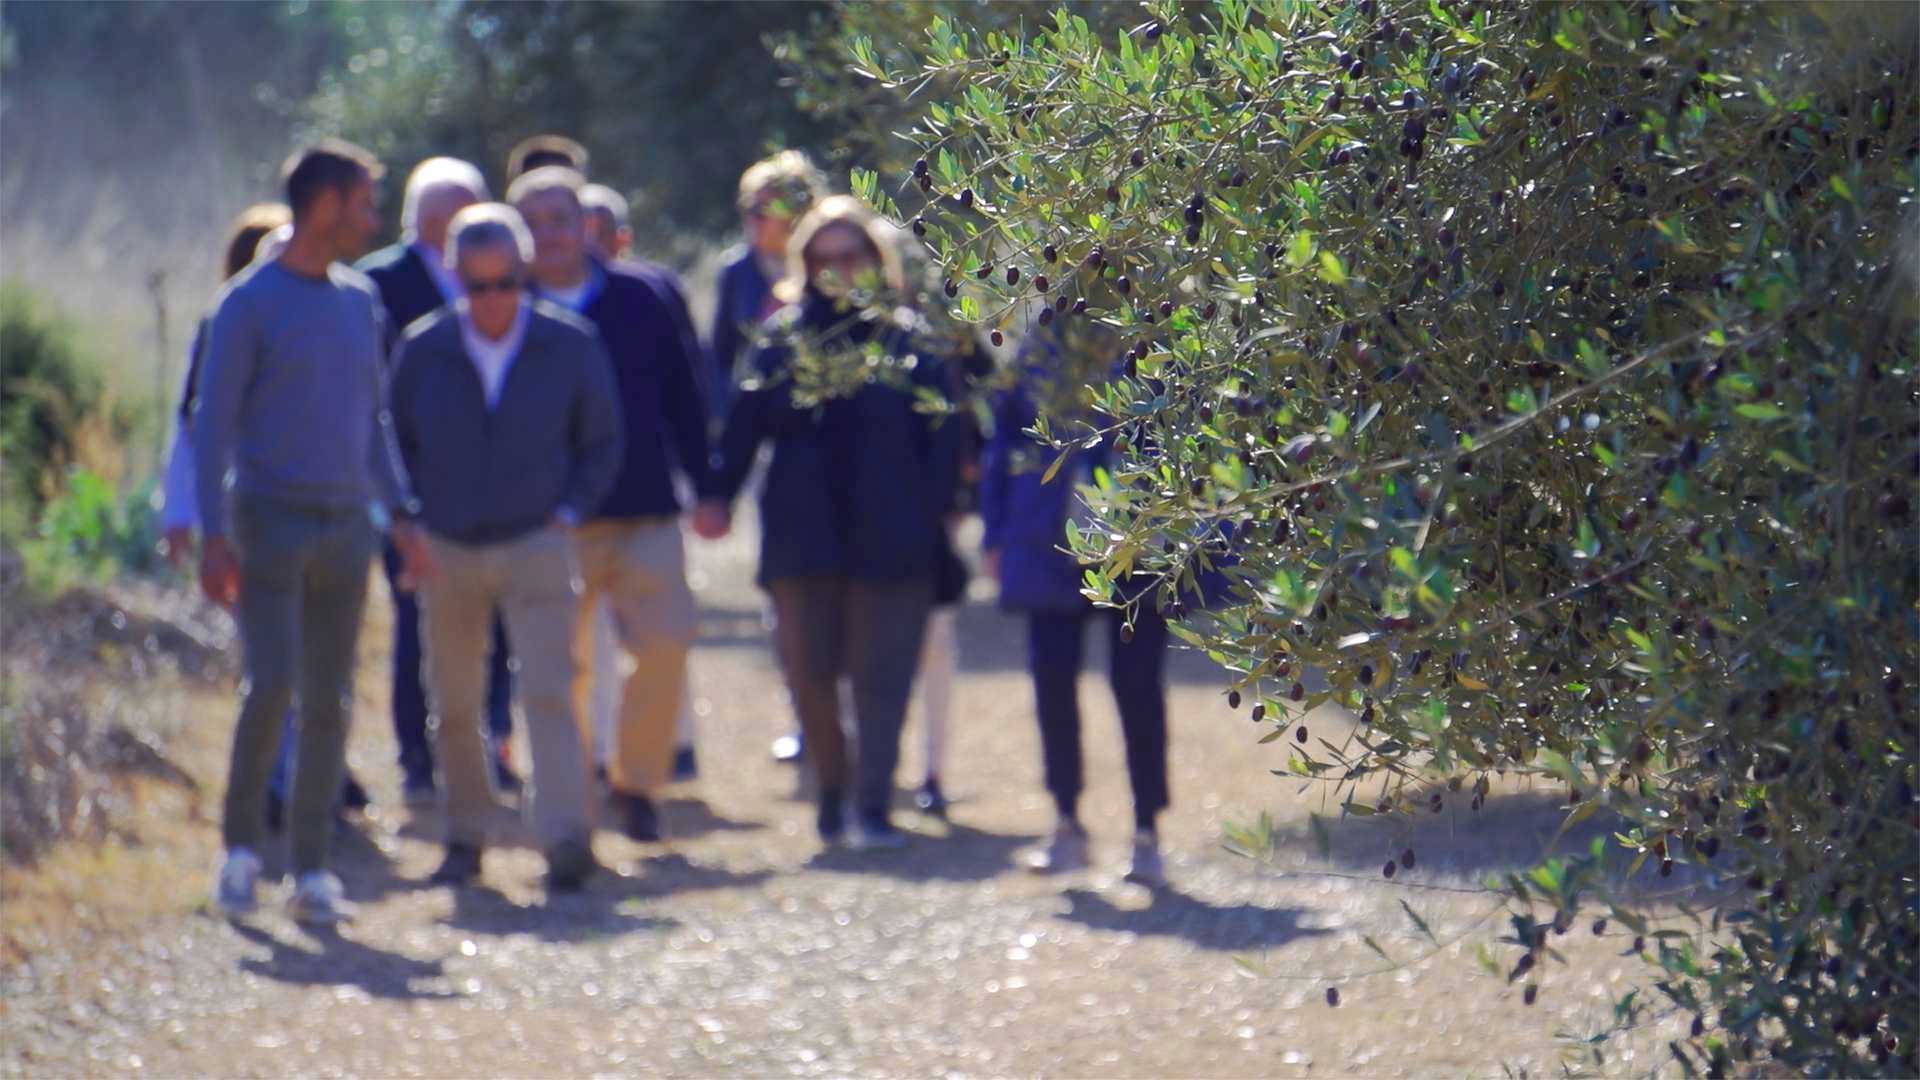 tausendjährige olivenbäume canet lo roig,